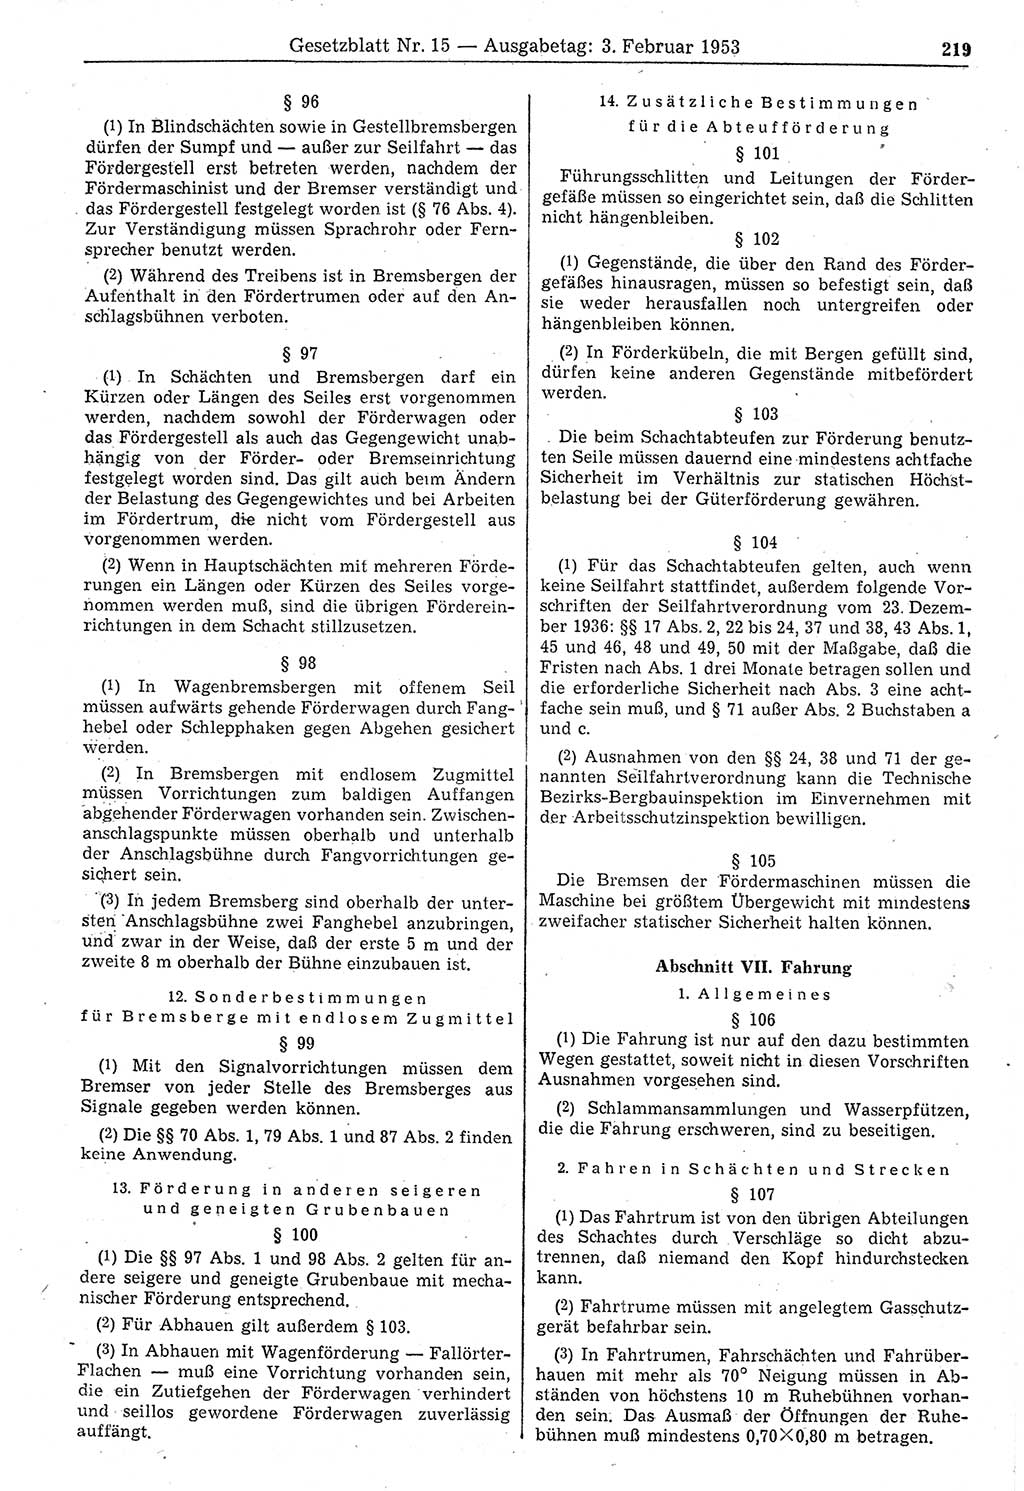 Gesetzblatt (GBl.) der Deutschen Demokratischen Republik (DDR) 1953, Seite 219 (GBl. DDR 1953, S. 219)